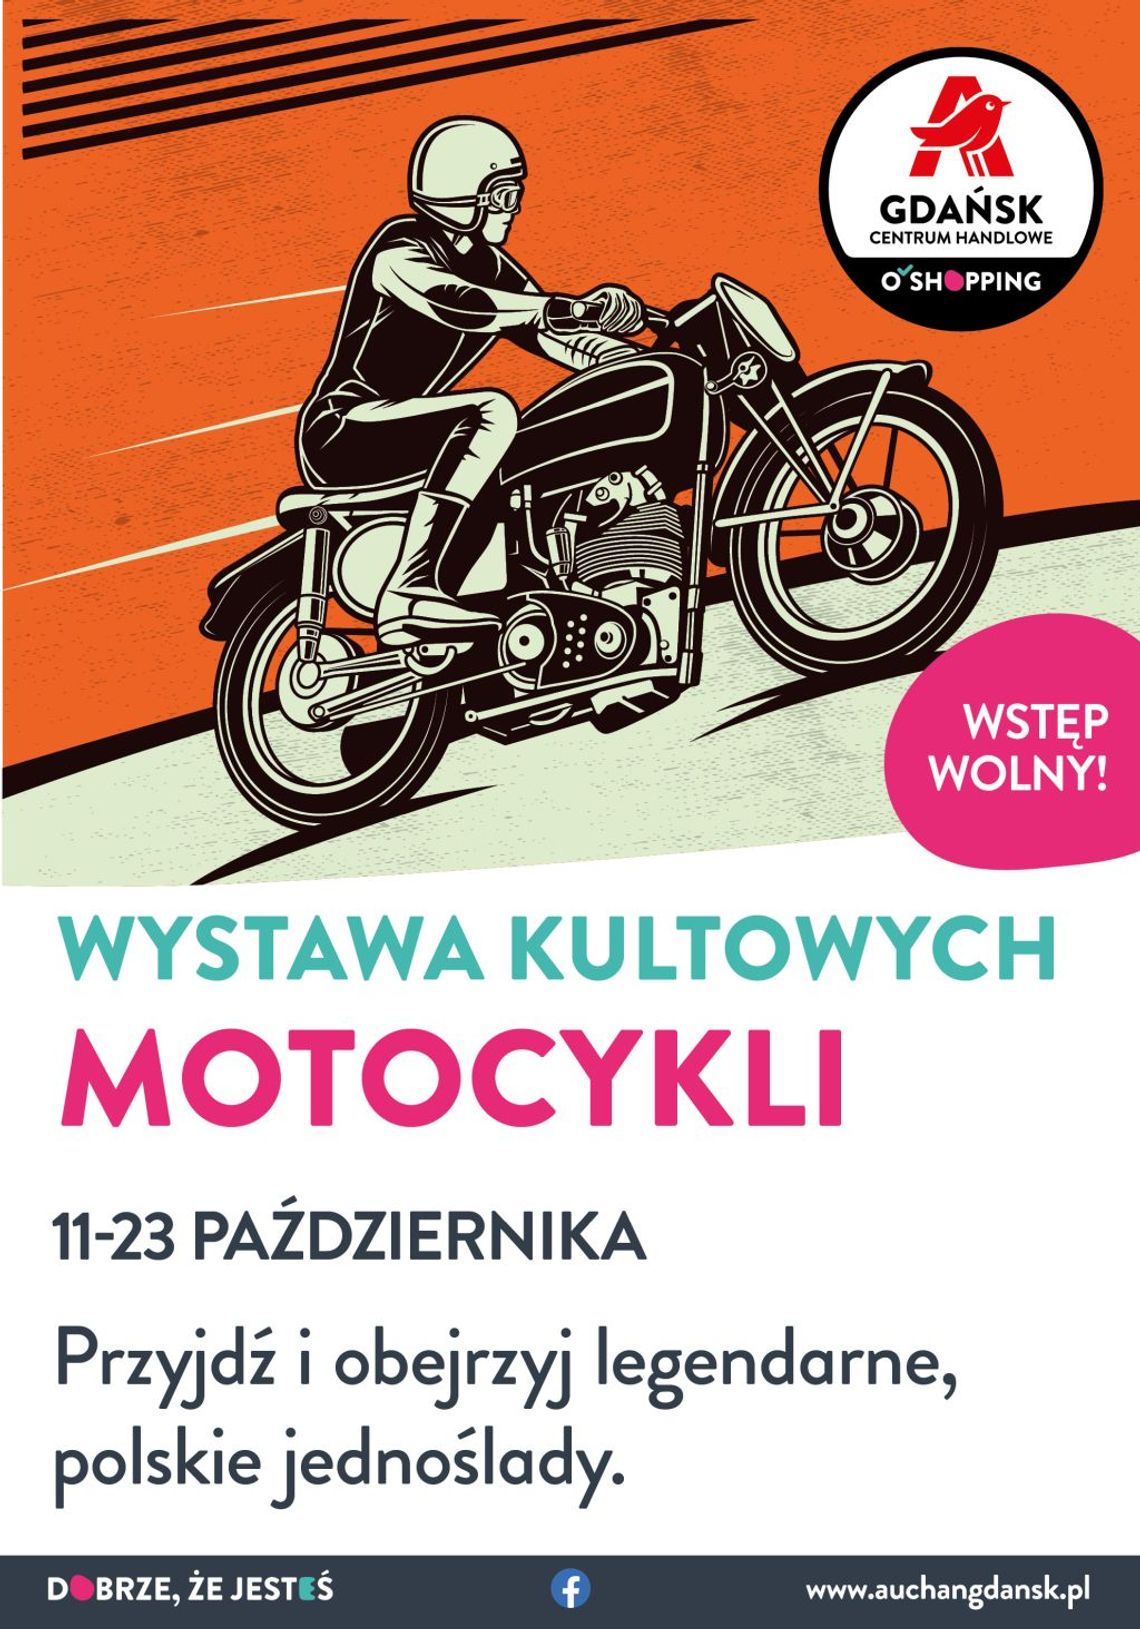 Kultowe motocykle PRL i wspomnienia sprzed lat